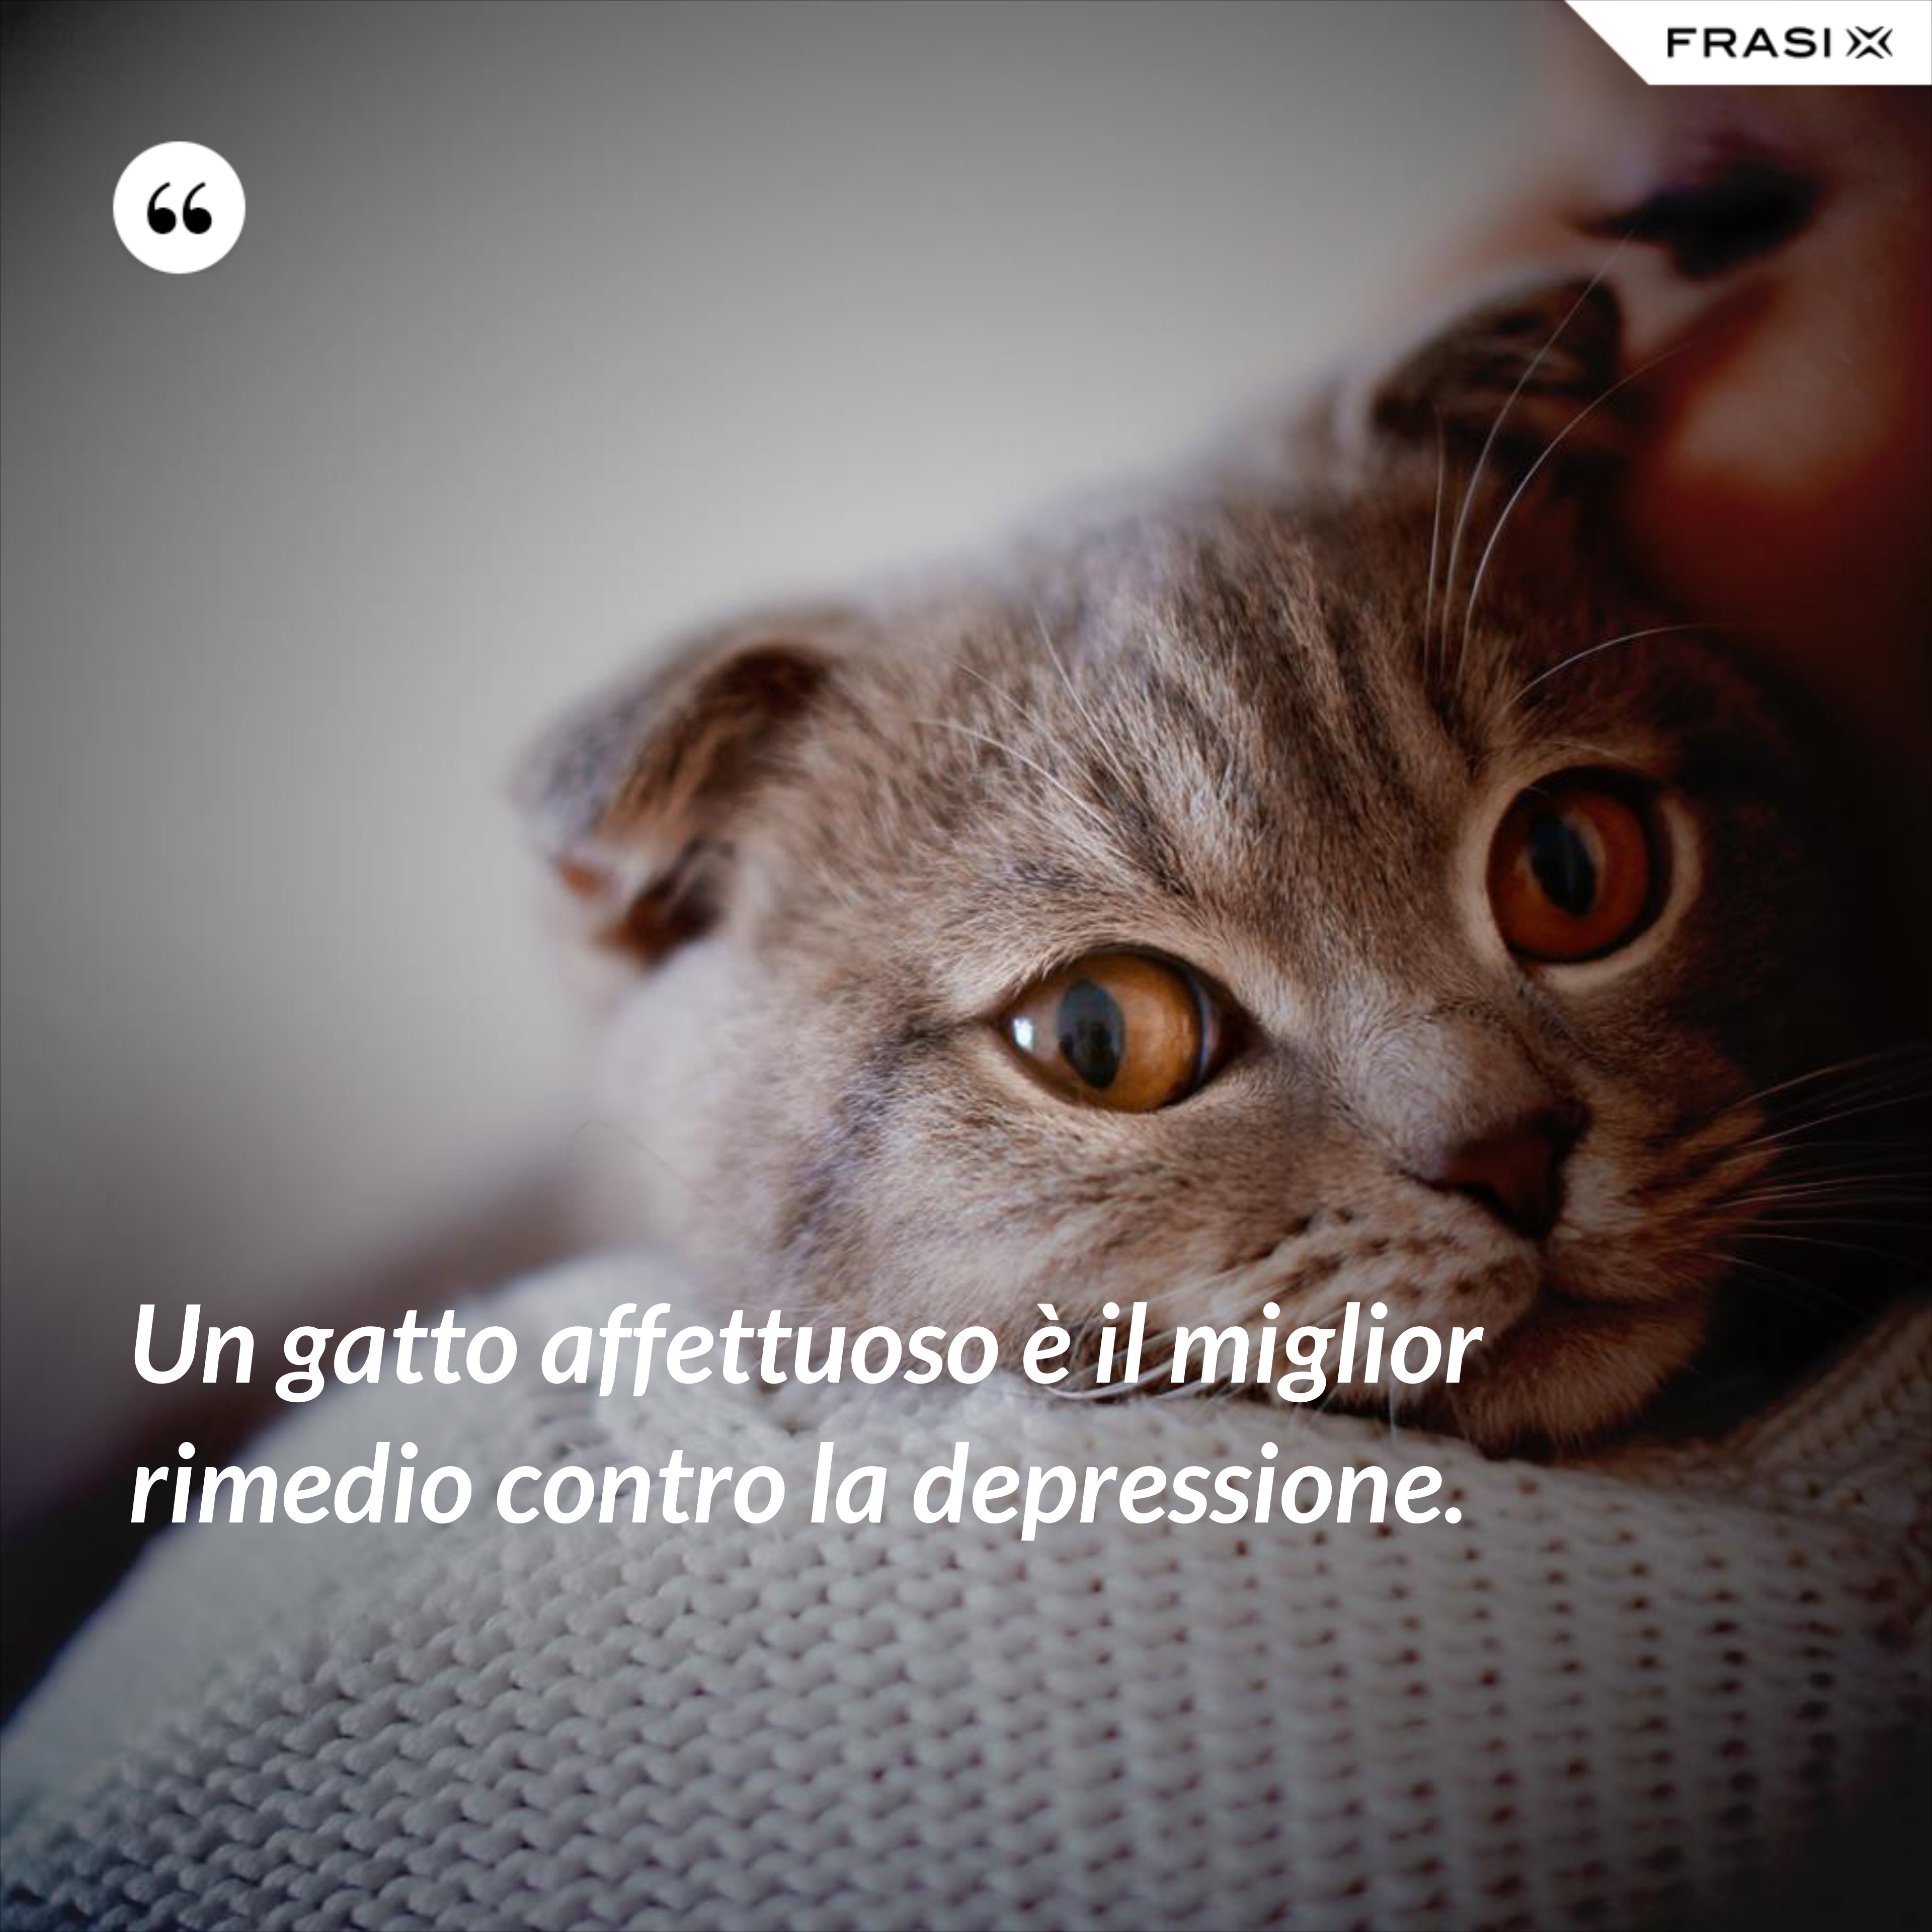 Un gatto affettuoso è il miglior rimedio contro la depressione. - Anonimo